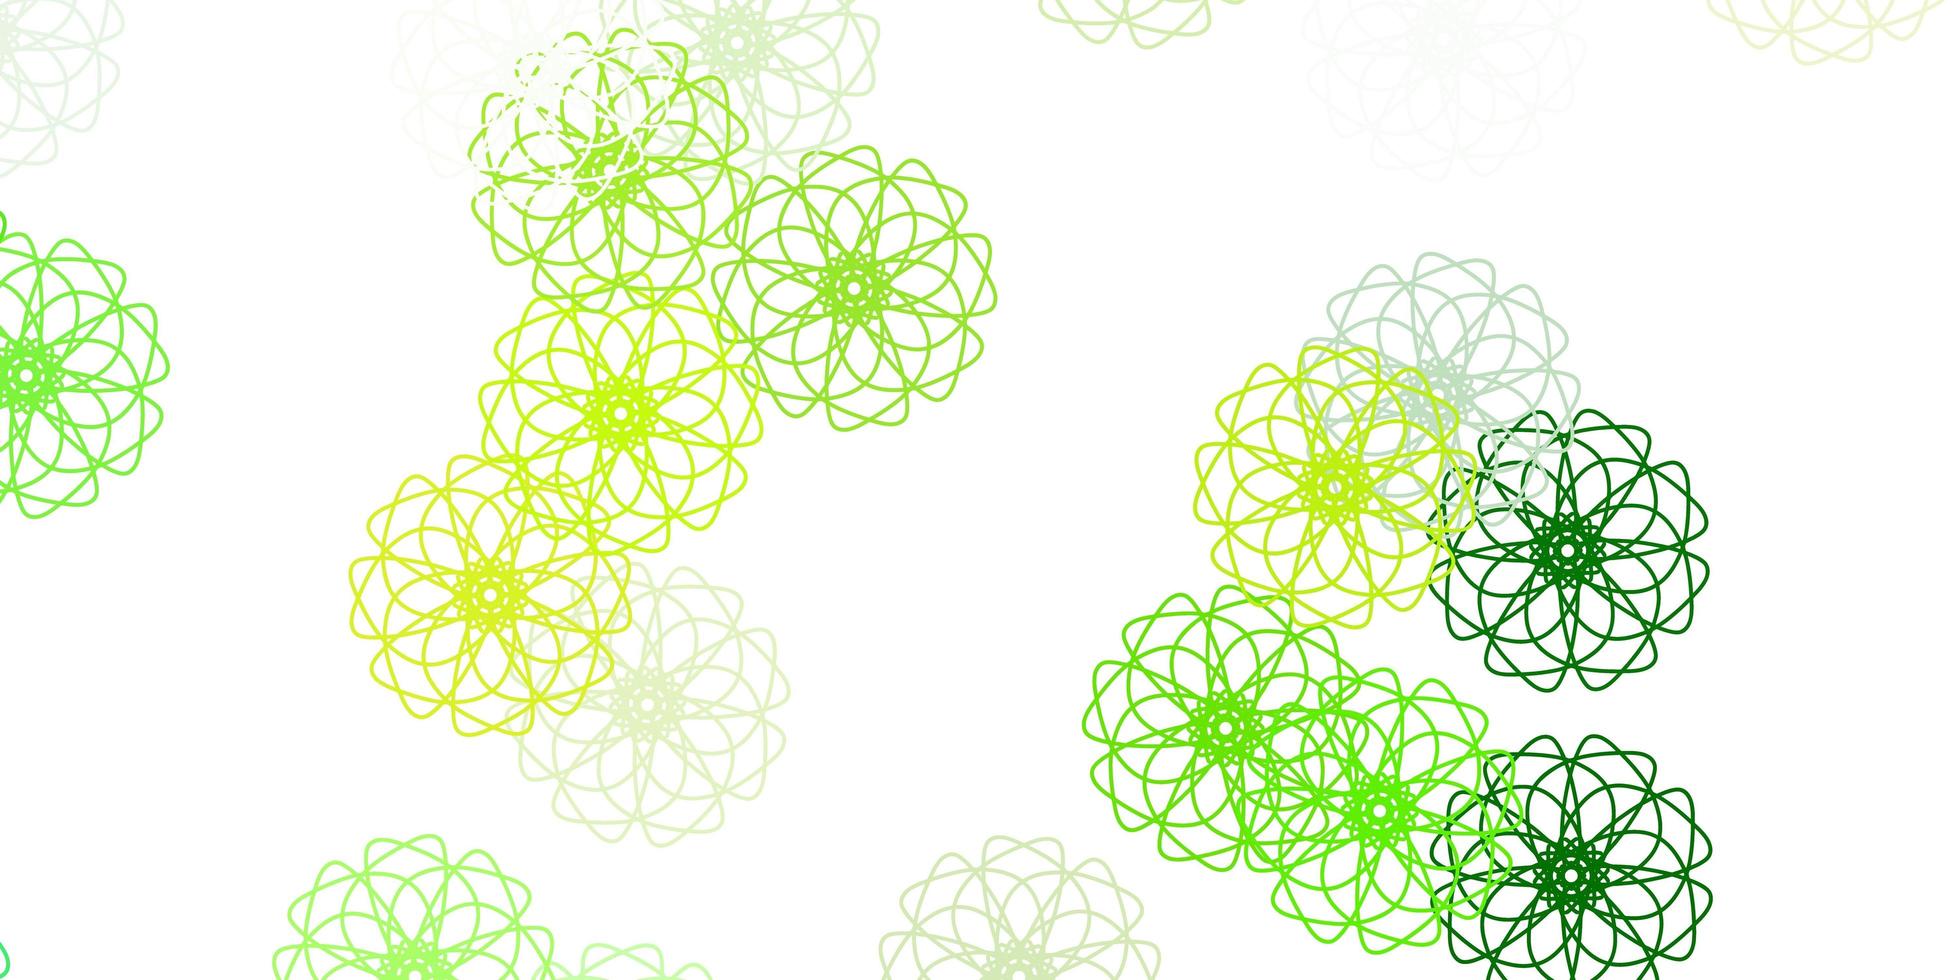 sfondo doodle vettoriale verde chiaro, giallo con fiori.